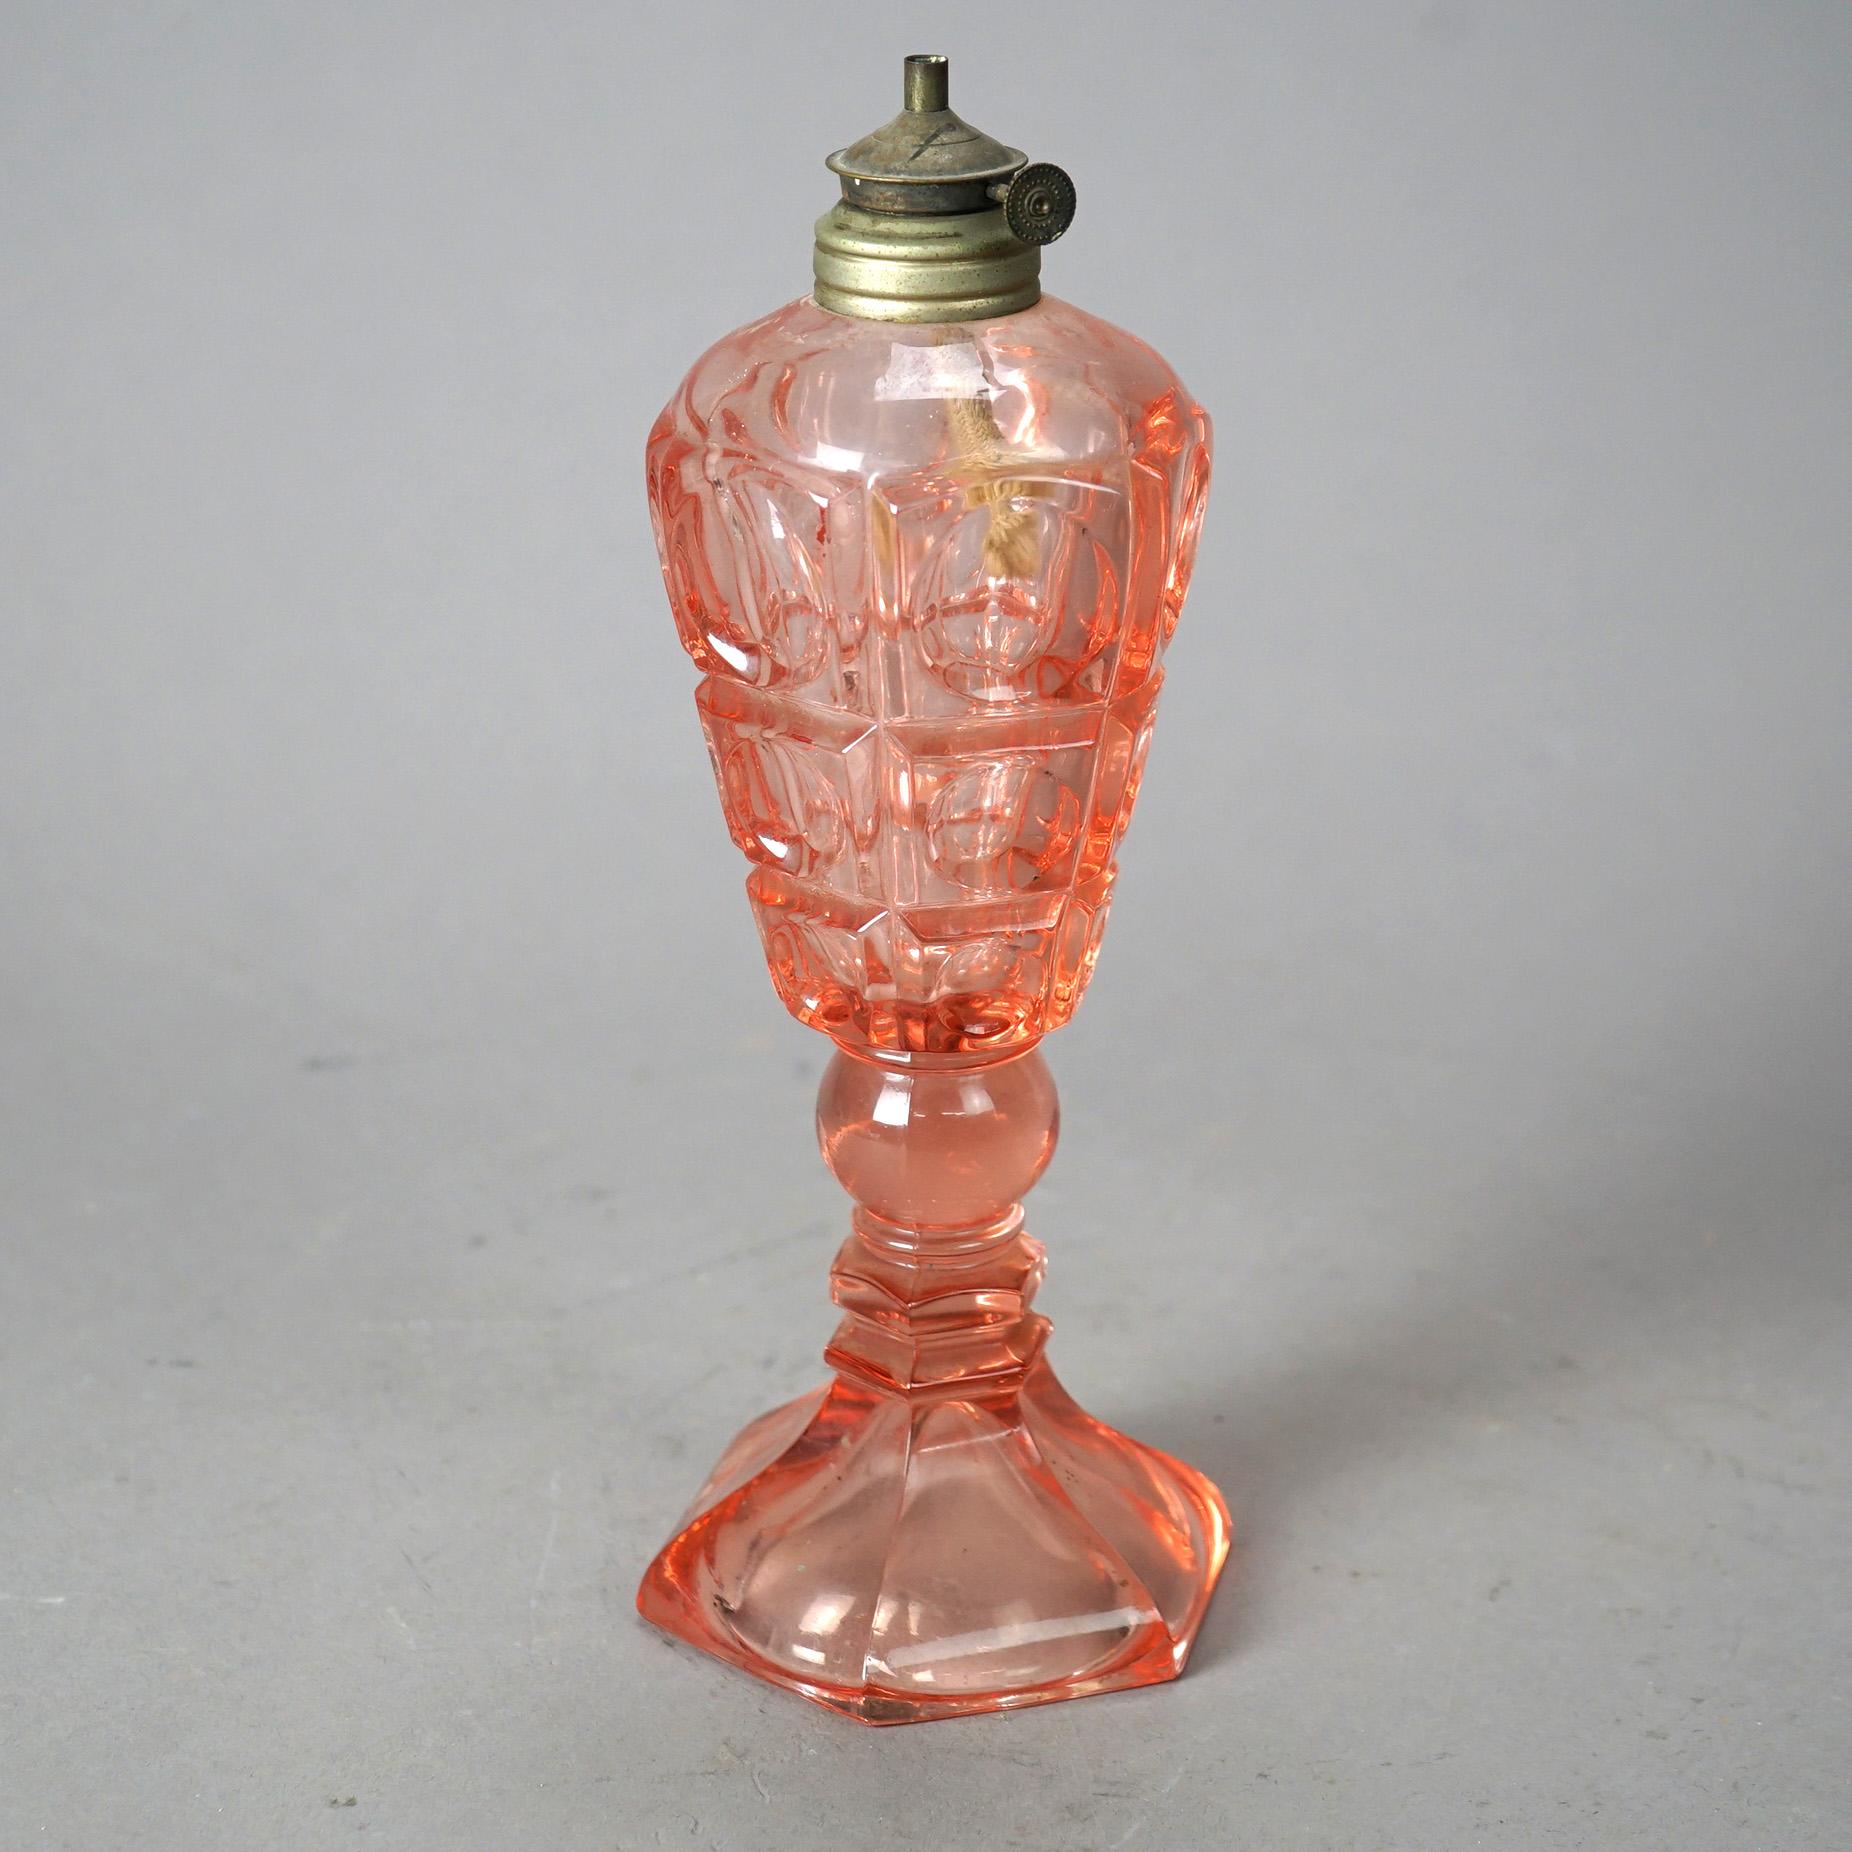 Lampe à huile ancienne en verre pressé rose avec un motif en forme de coin de table, montée sur une colonne avec un pied hexagonal, vers 1840.

Dimensions - 10 